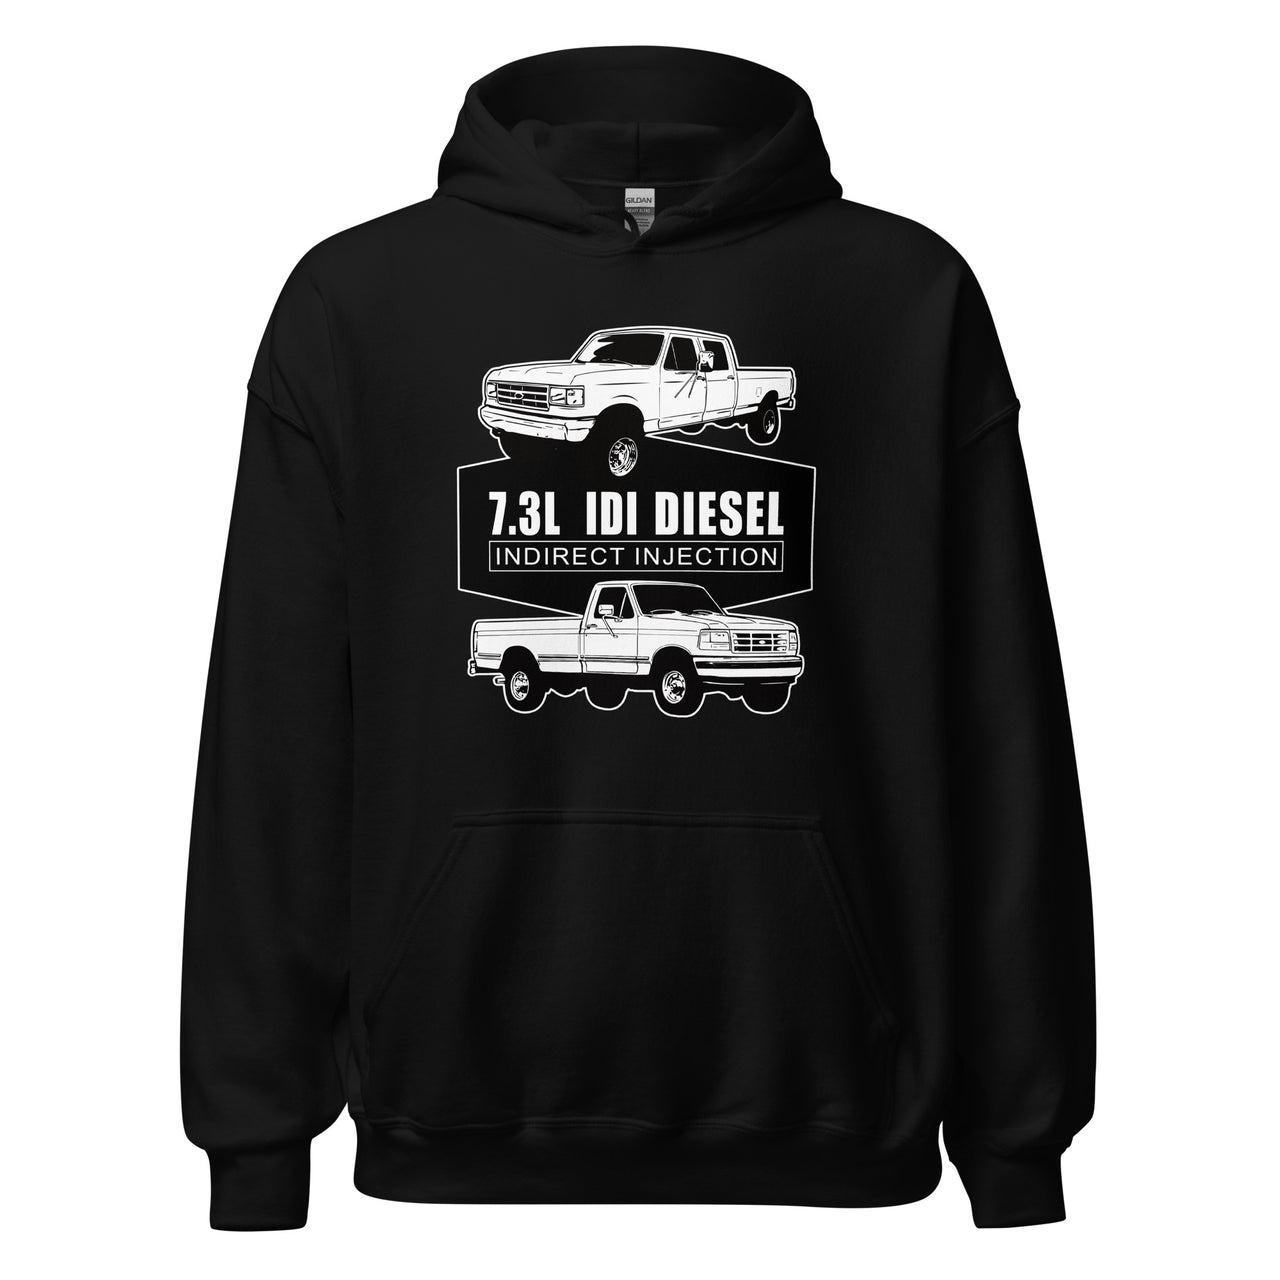 73 idi diesel truck hoodie in black